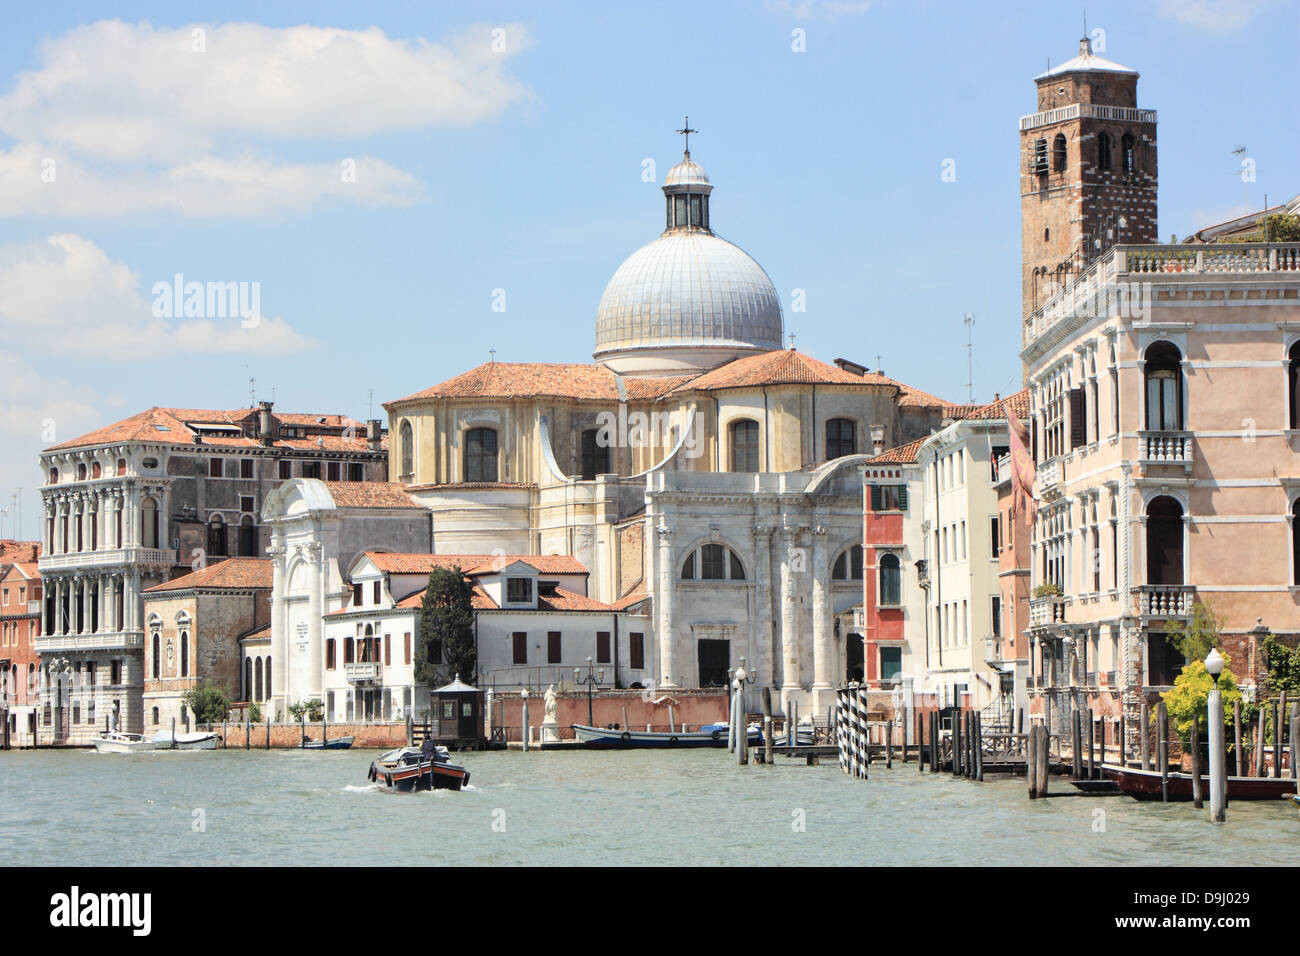 La iglesia de San Geremia (Chiesa di San Geremia) en el Gran Canal de Venecia. Foto de stock